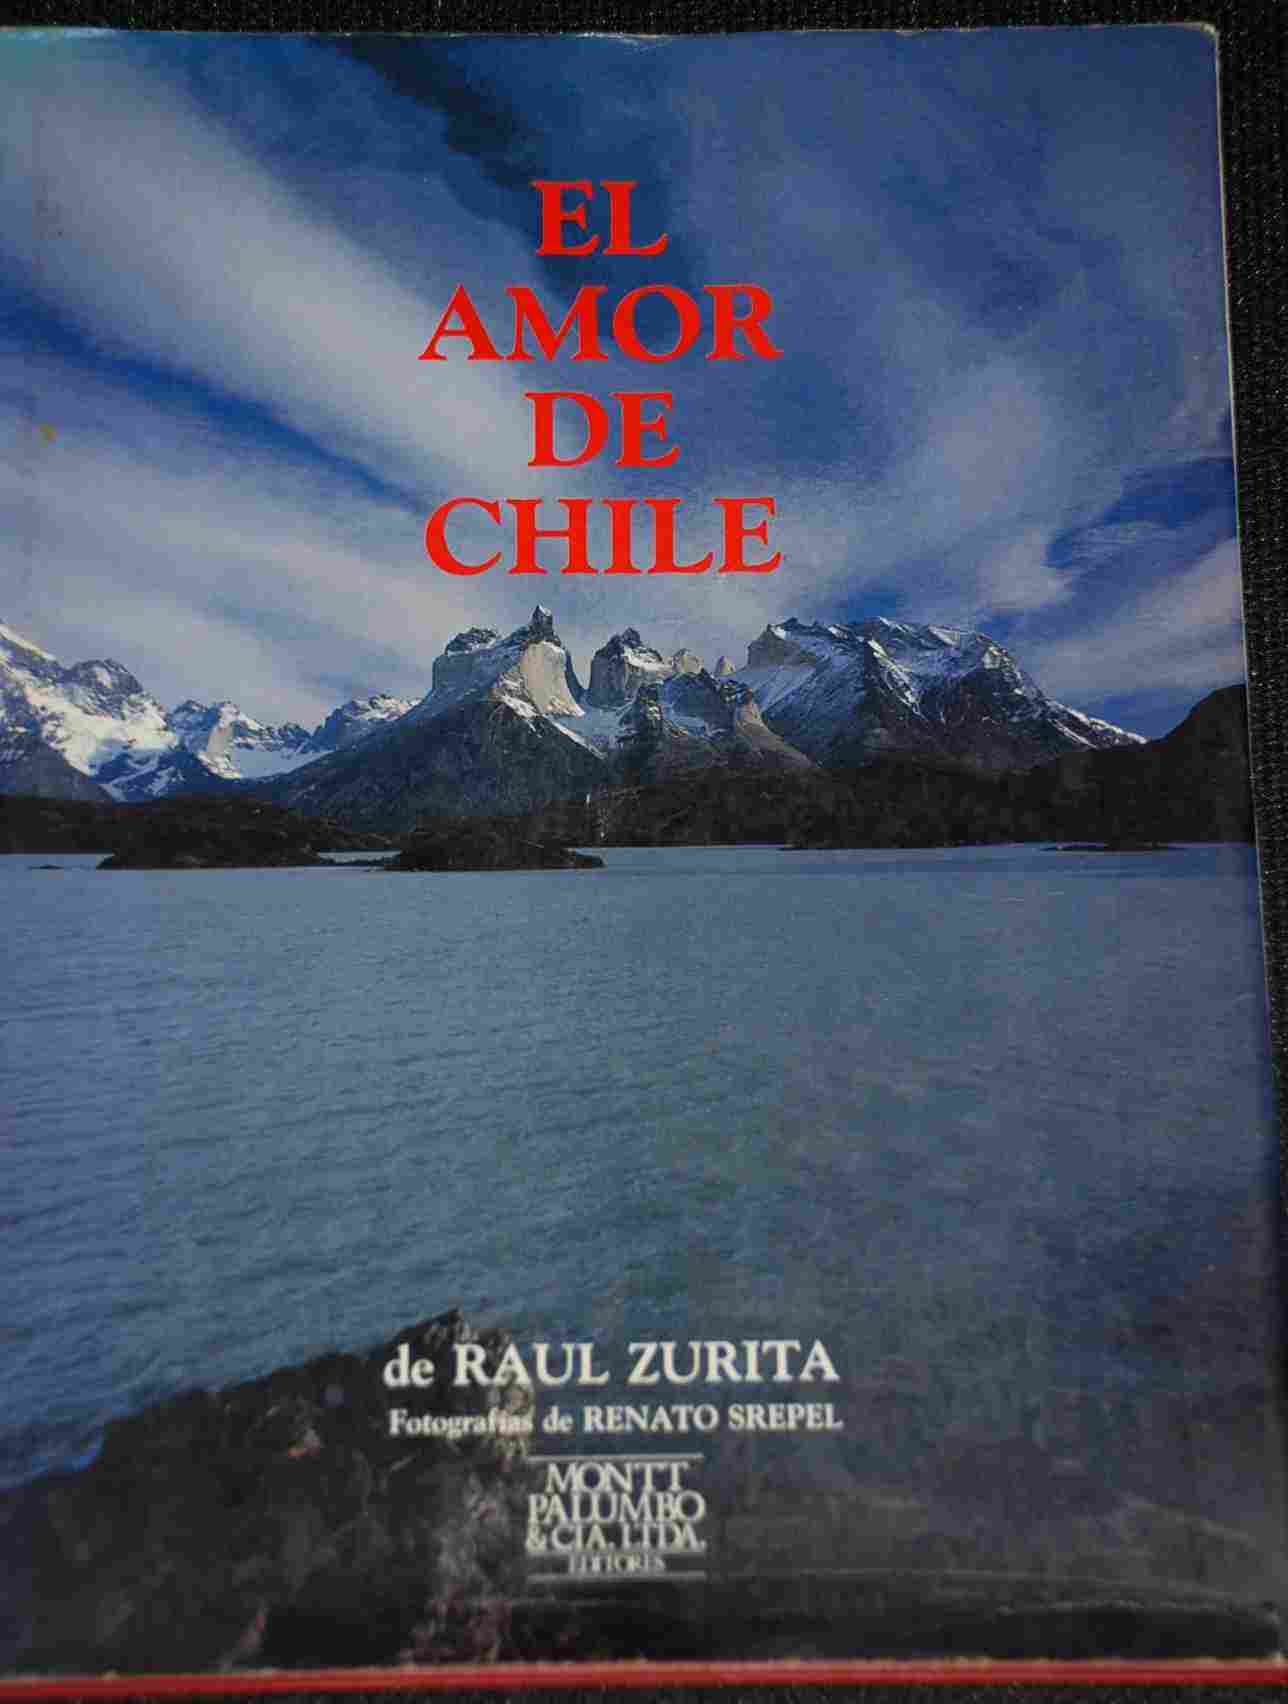 Raul Zurita - El Amor de Chile